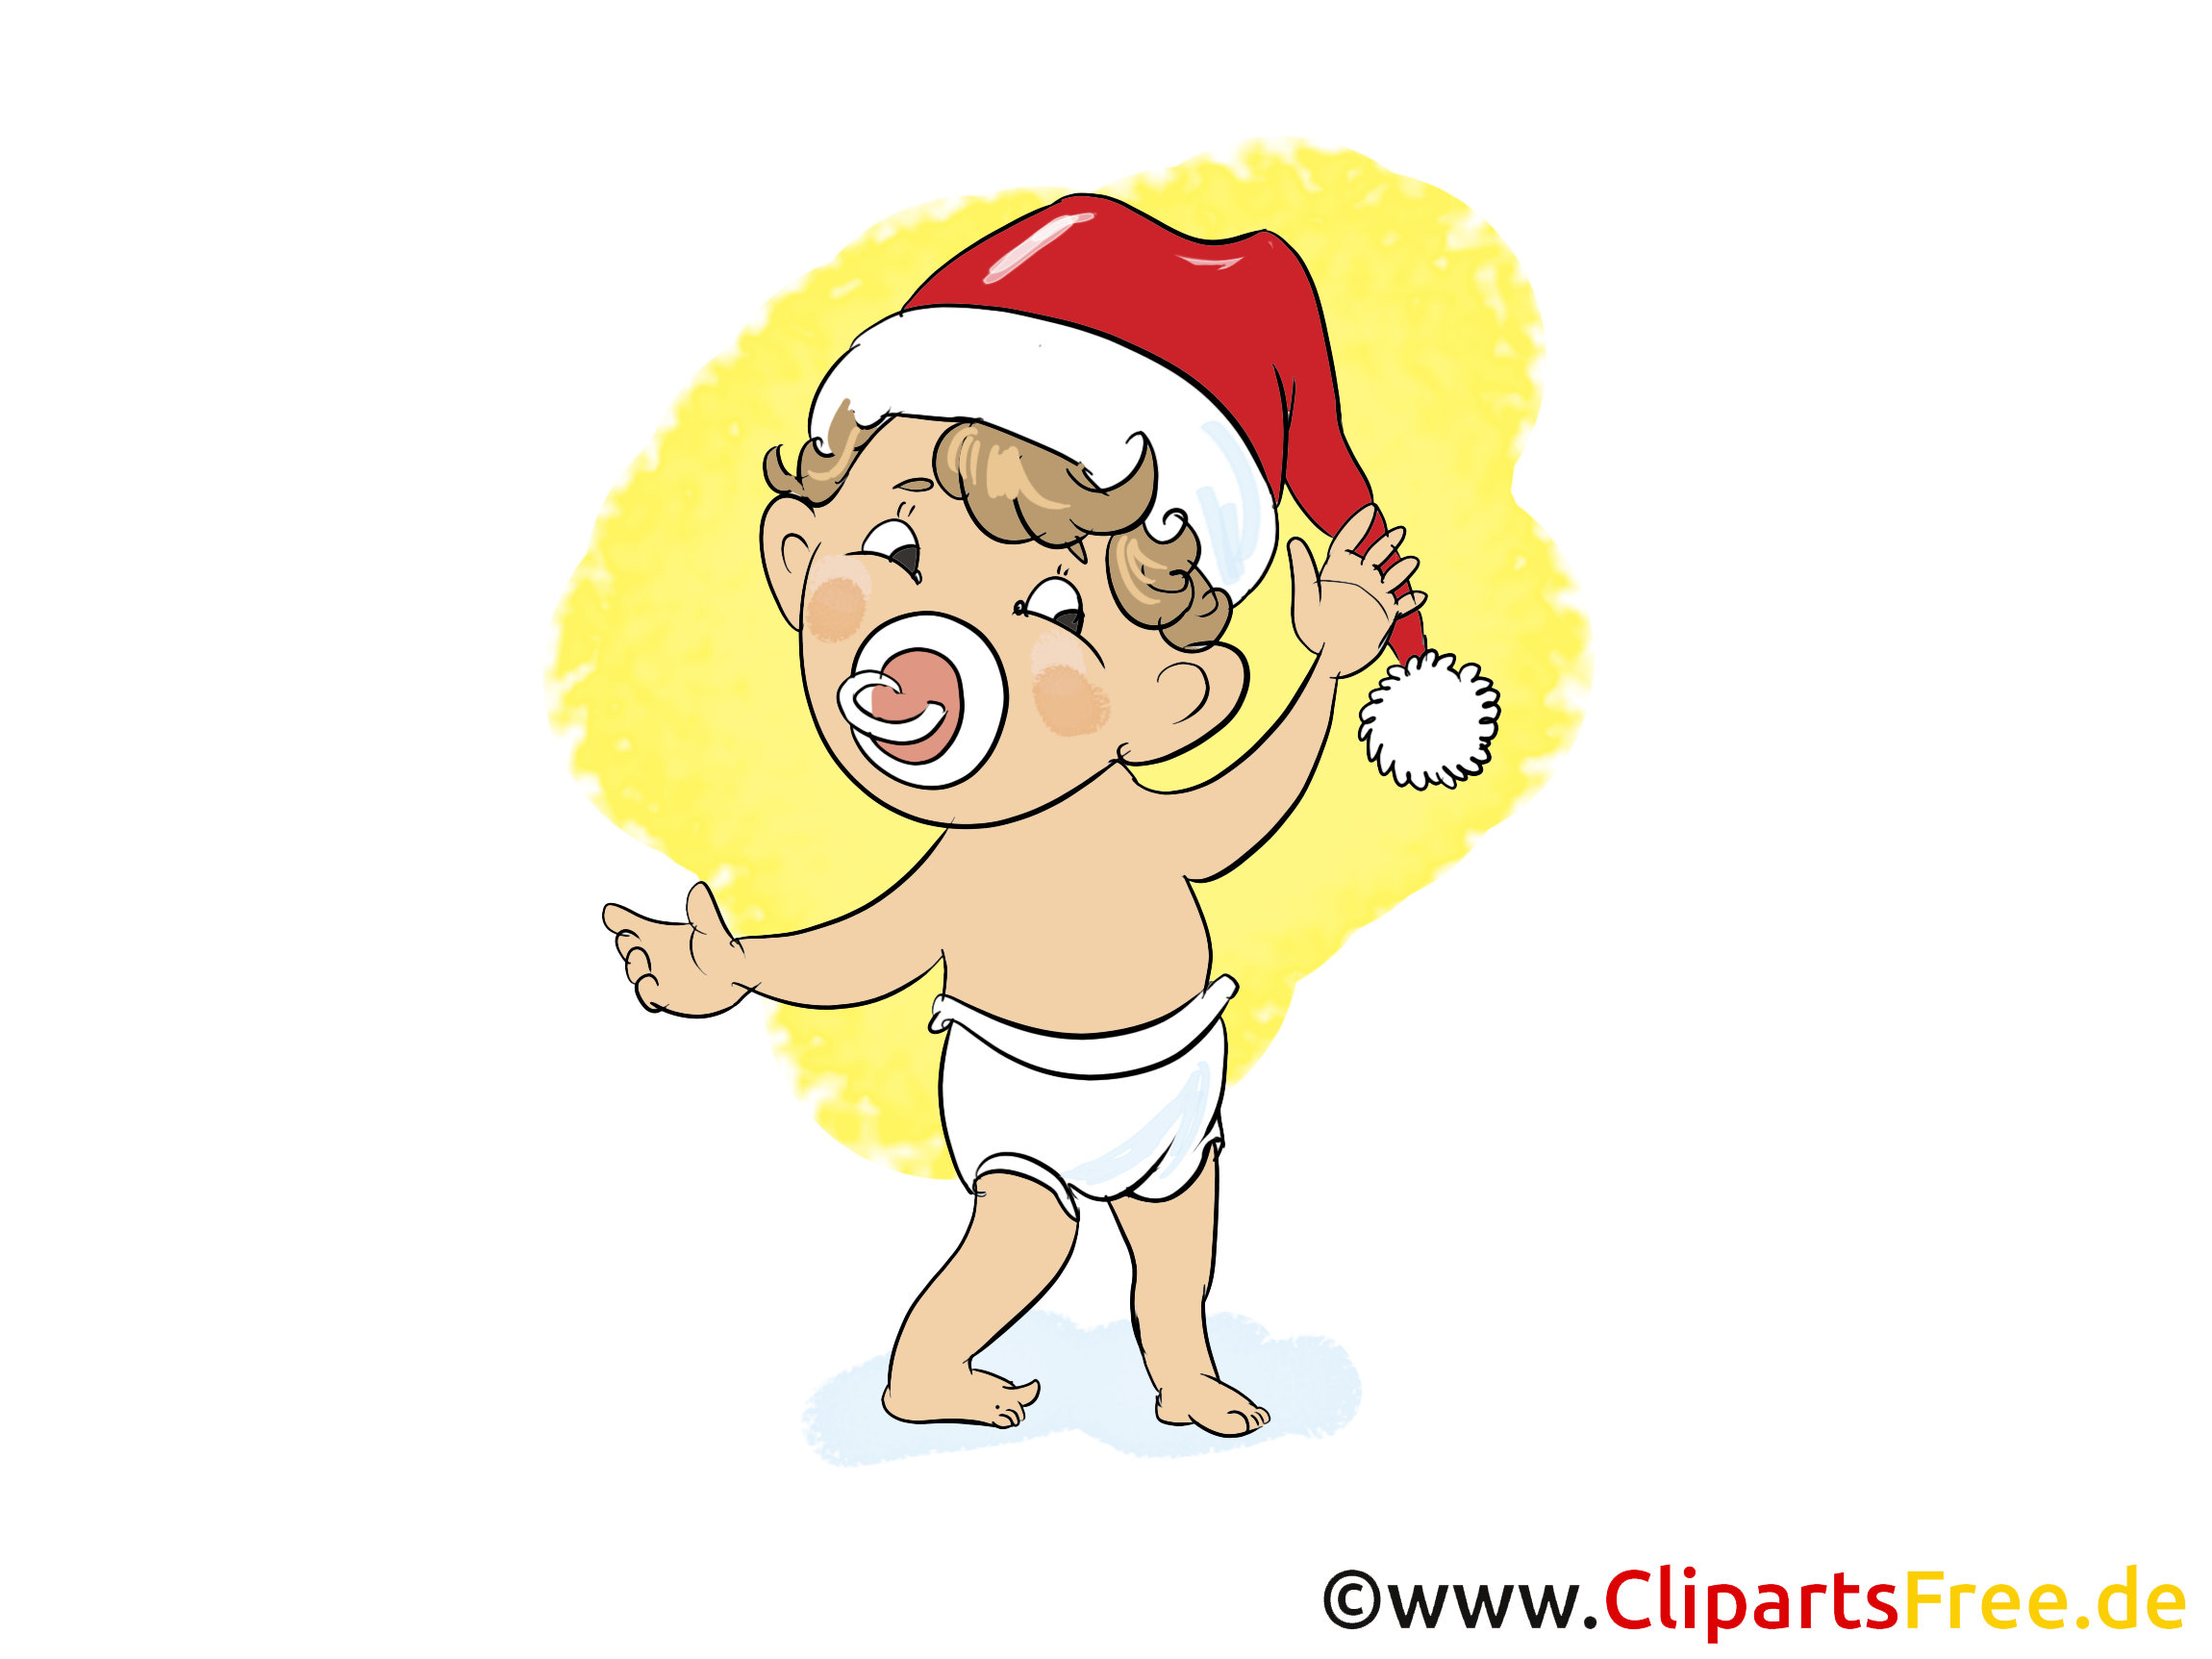 Kostenlos Clipart Zu Weihnachten, Silvester, Neujahr über Kostenlose Cliparts Weihnachten